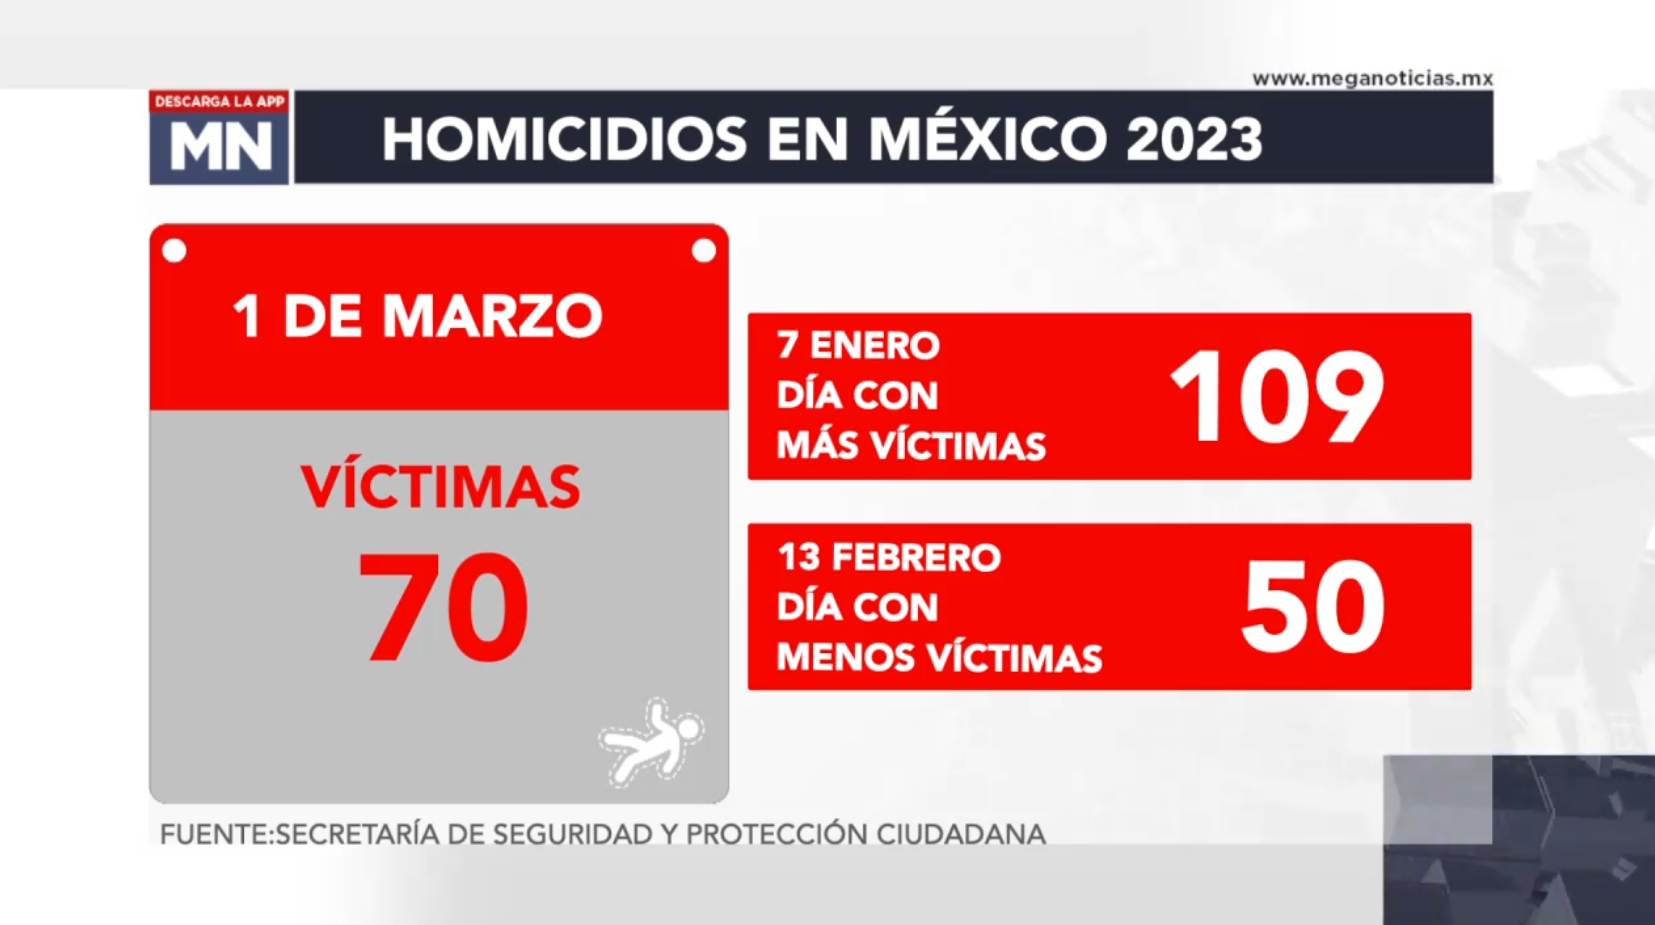 4360 Asesinatos En México En Lo Que Va De 2023 9393